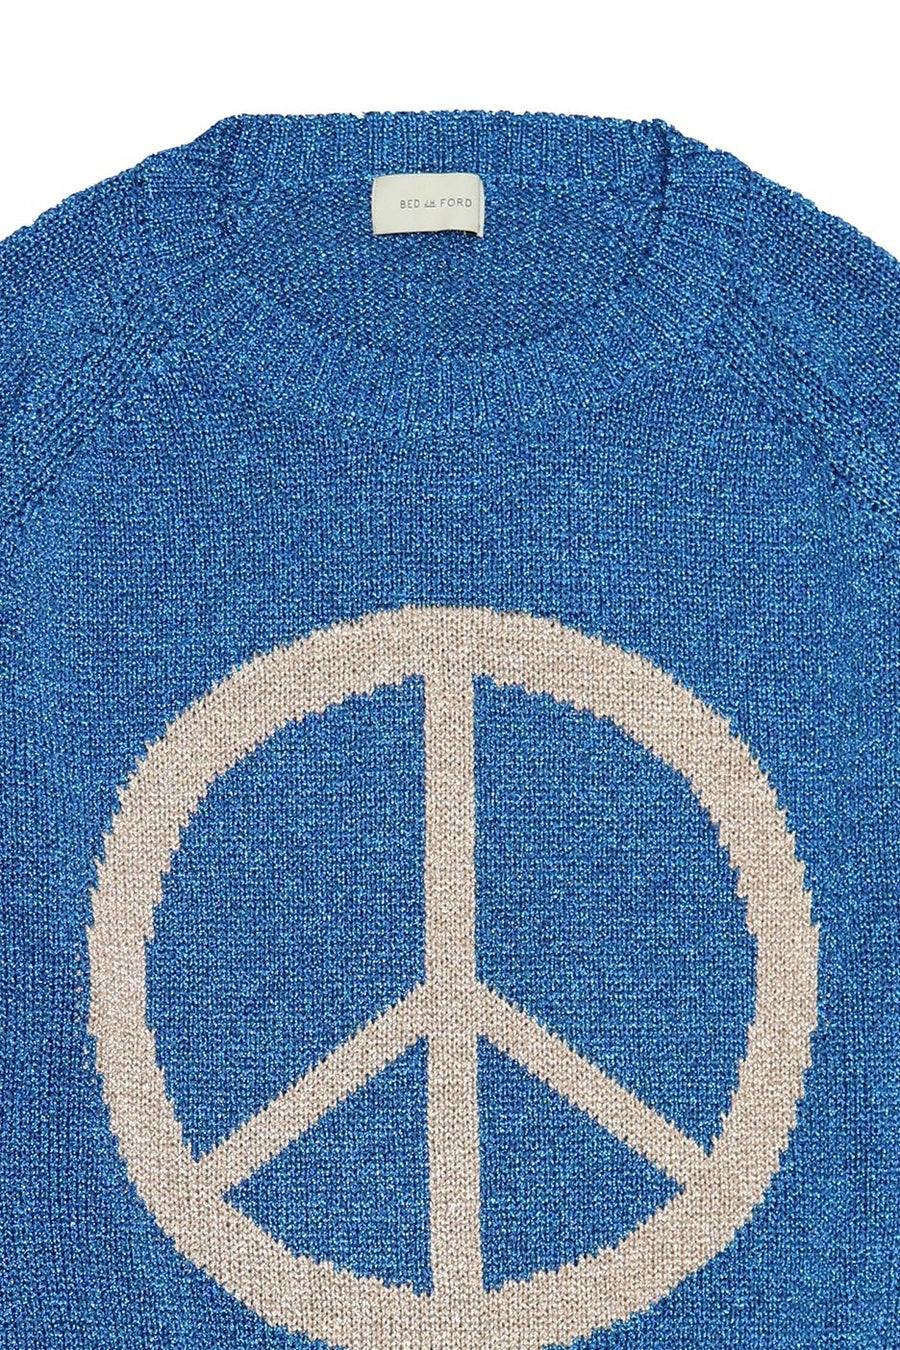 BED j.w. FORD × P.A.A  Peace Symbol Glitter Knit